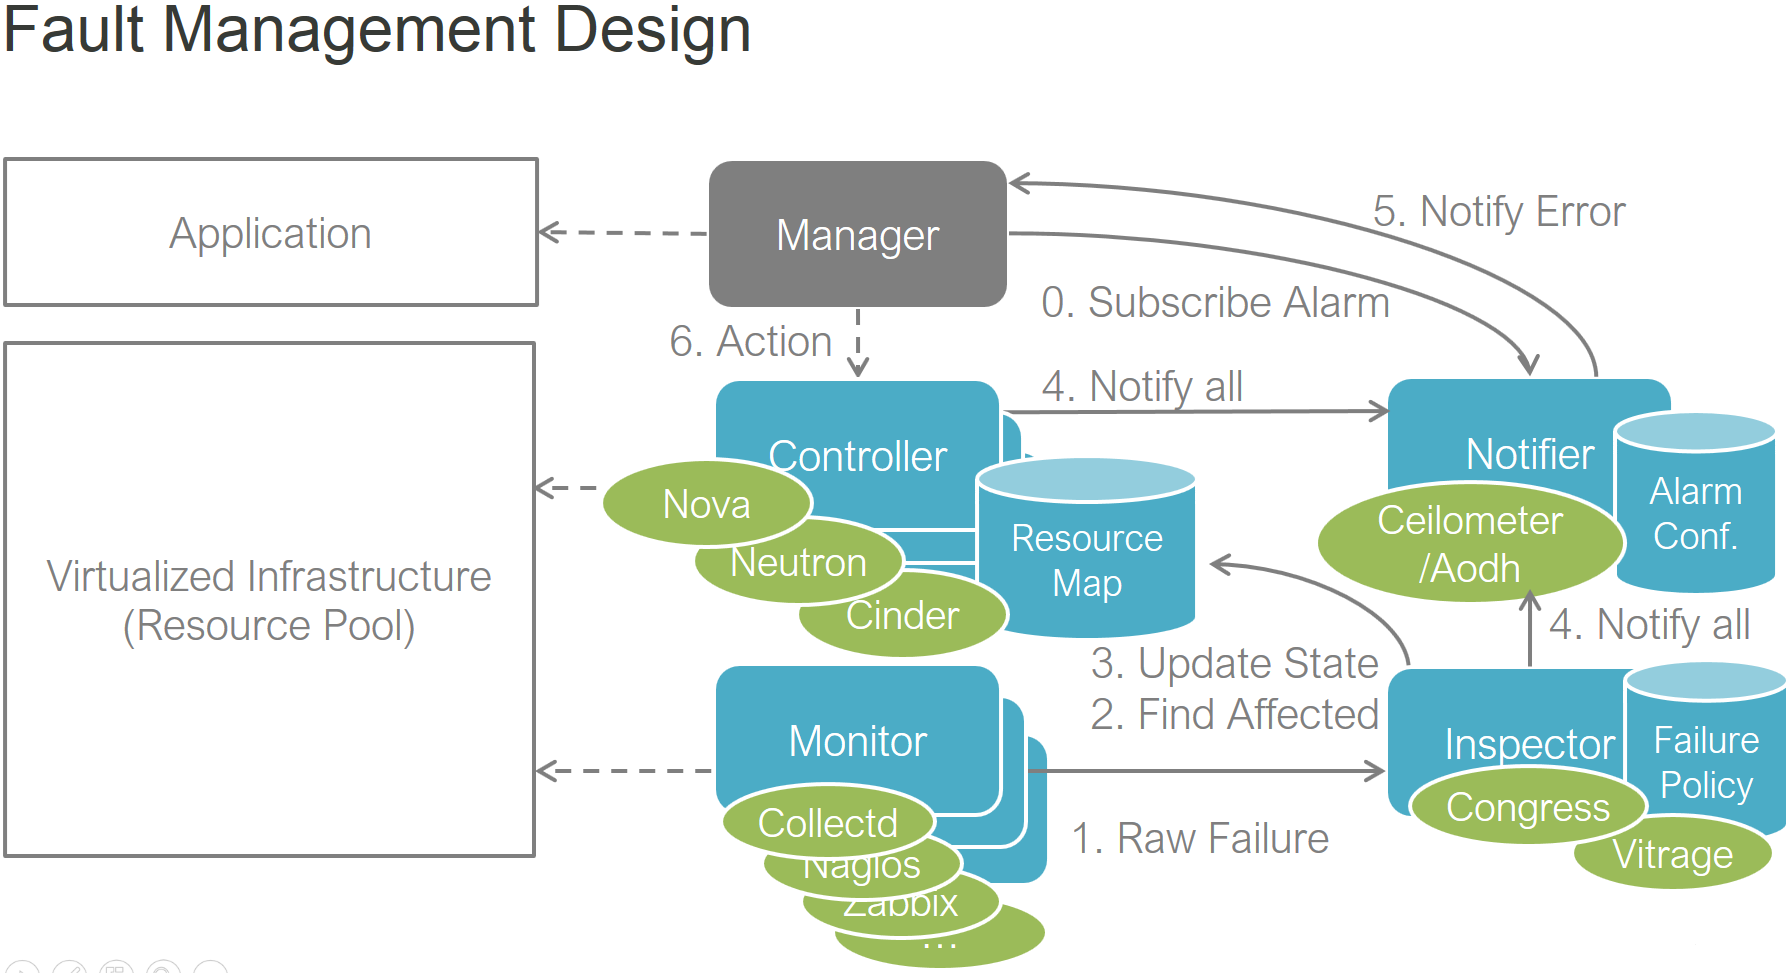 docs/development/overview/functest_scenario/images/Fault-management-design.png